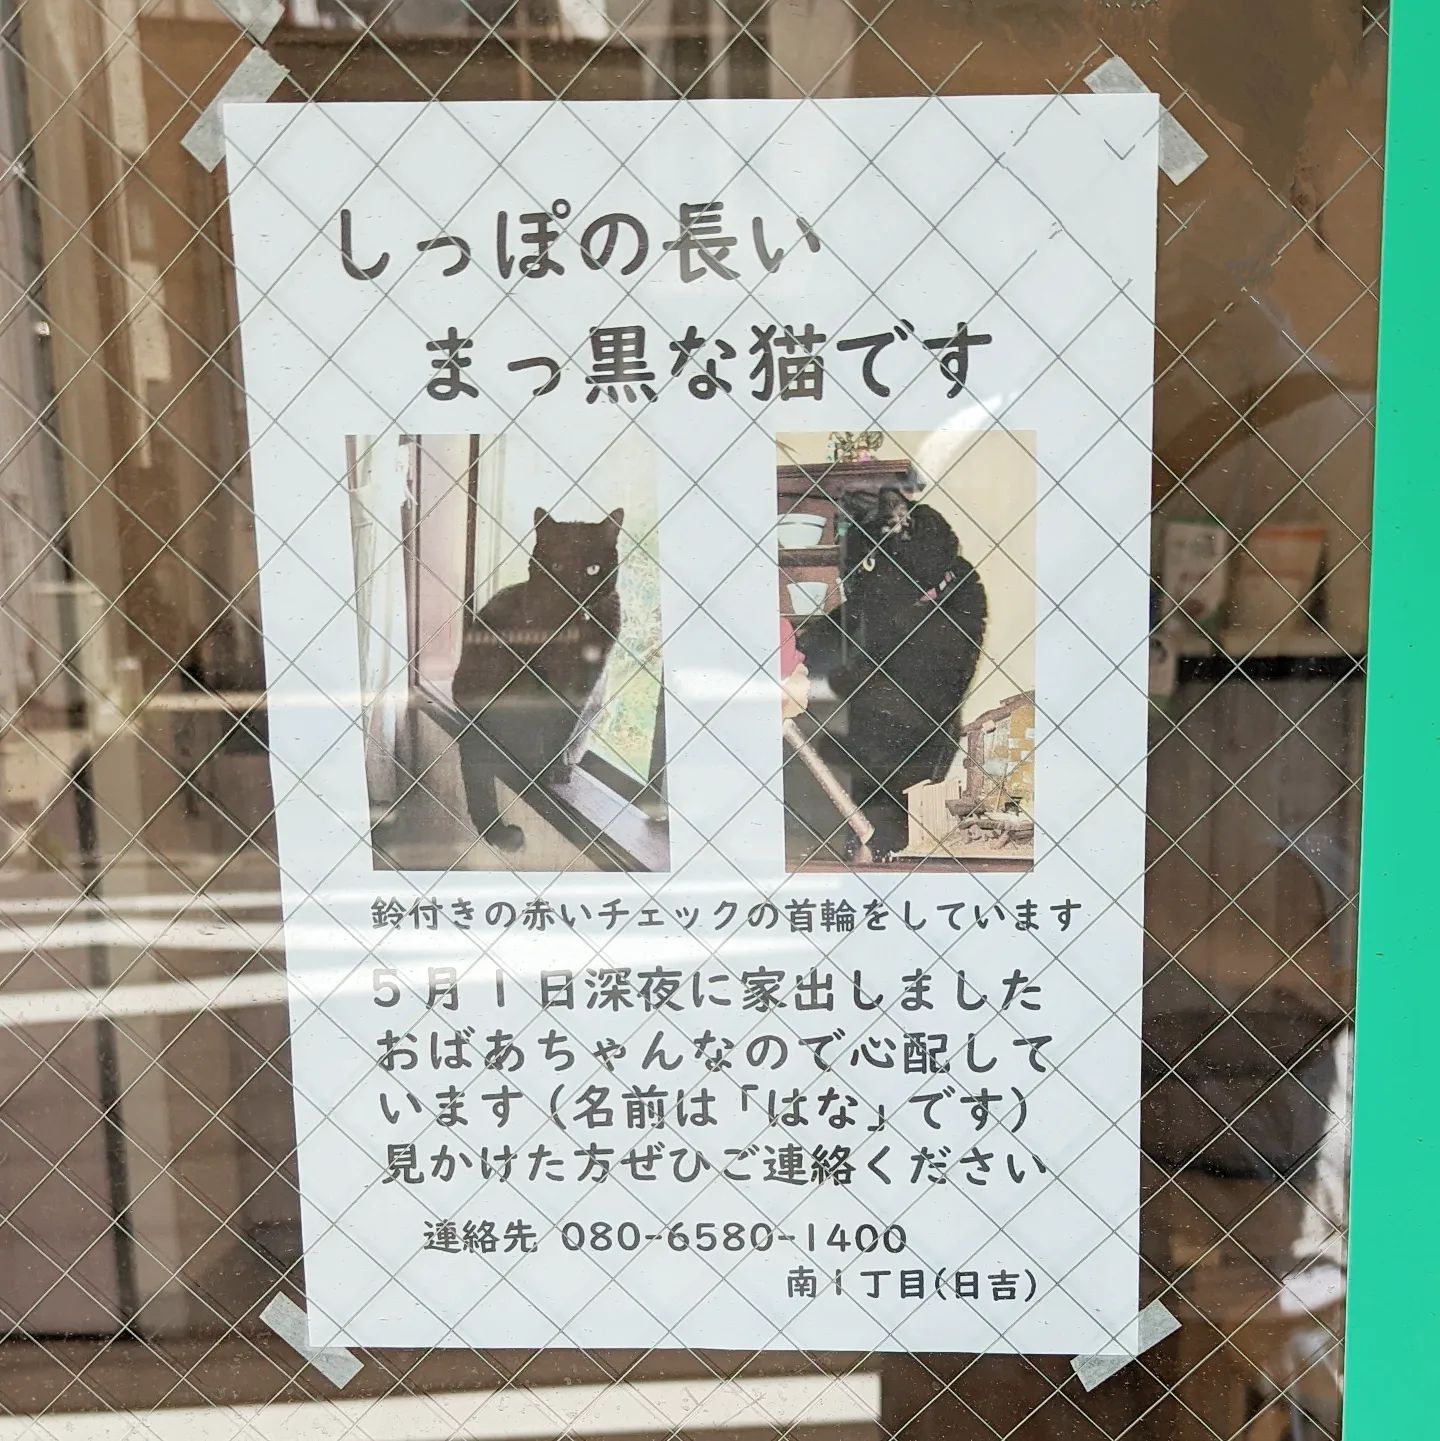 #武蔵小山情報 #迷い猫 しっぽの長いまっ黒な猫を探してます。はなさんが見つかりますように。#武蔵小山 #猫 #迷い猫探してます #迷い猫さがしてます #迷い猫捜索中 #迷い猫捜索 #猫を探しています #猫探してます #西小山 #洗足